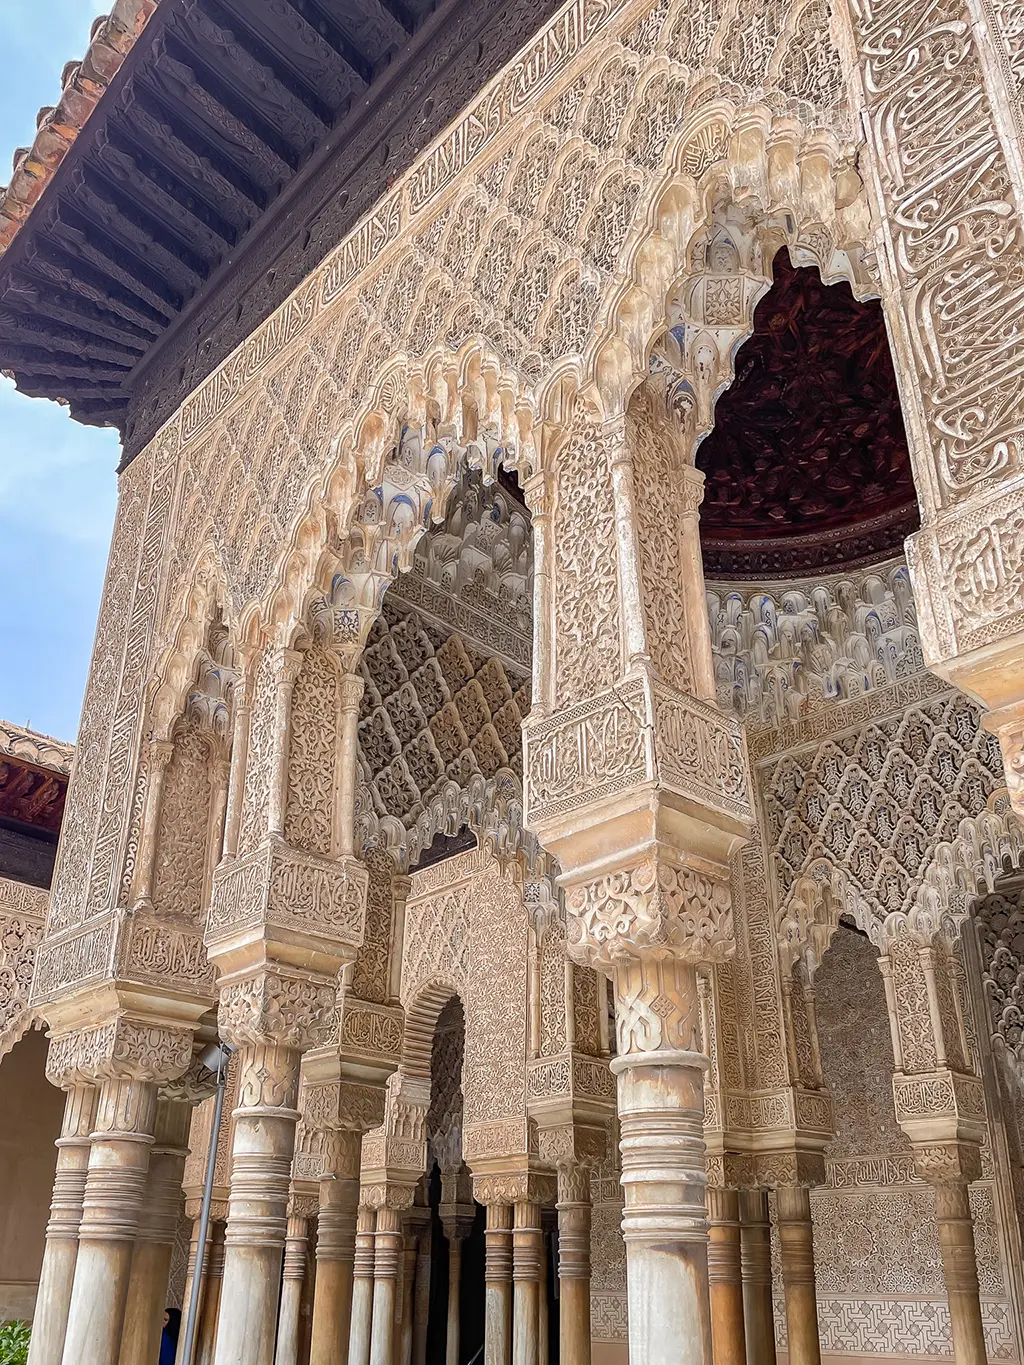 À la découverte des jardins de l’Alhambra